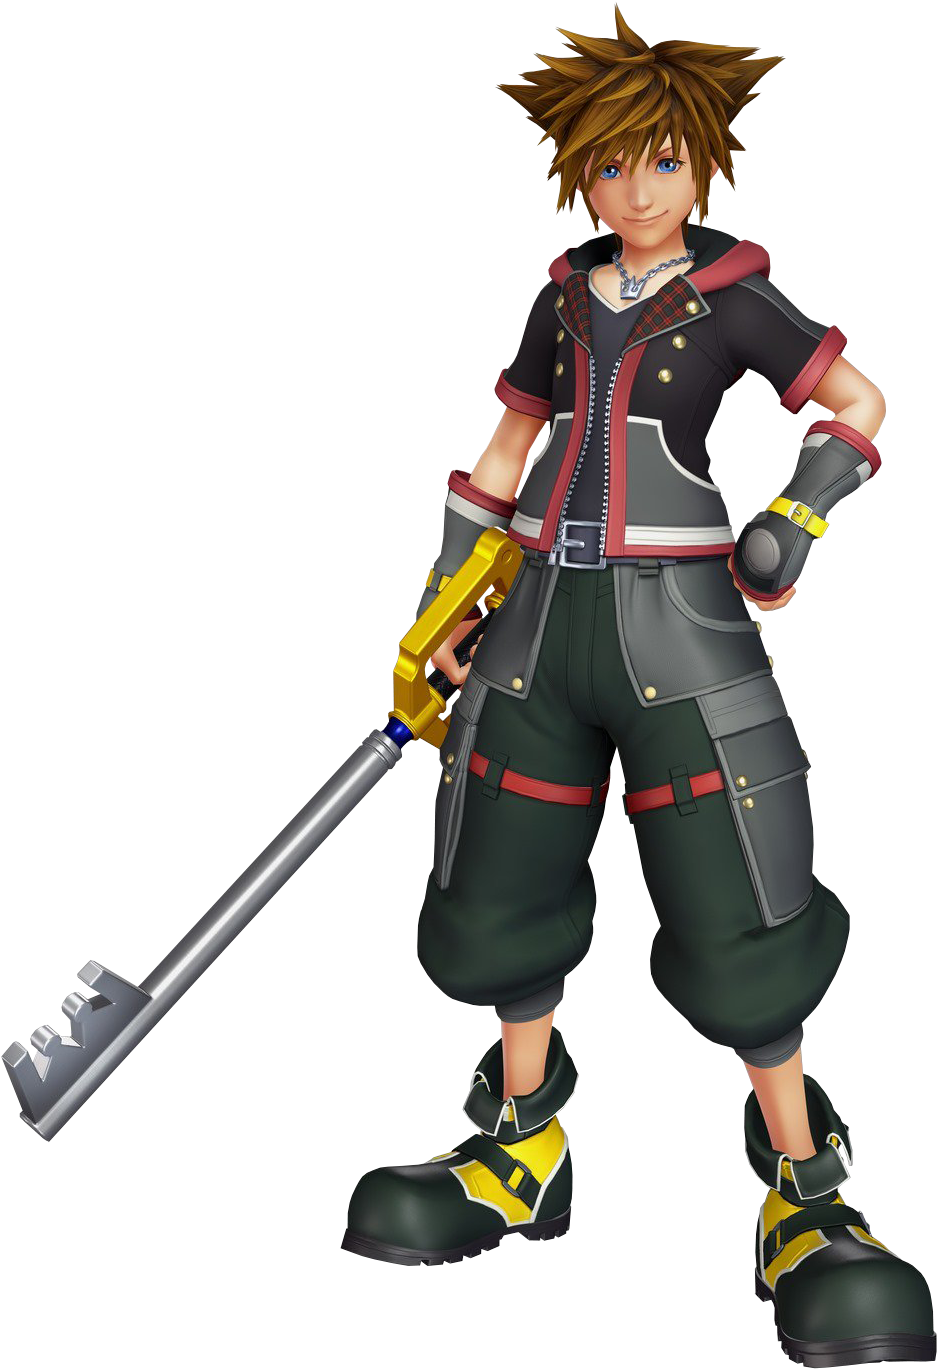 Sora - Sora De Kingdom Hearts (969x1371)